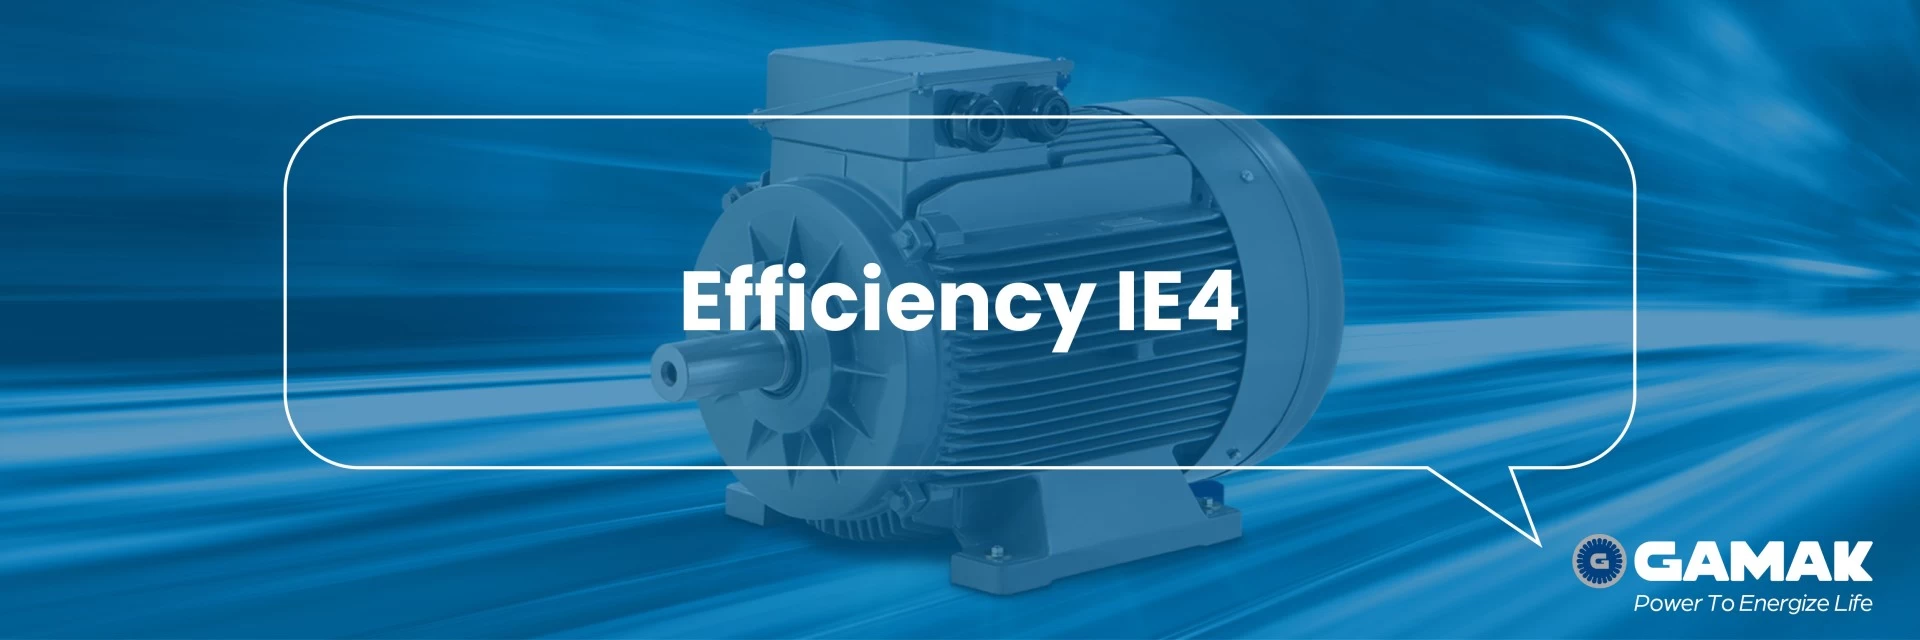 IE4 Efficiency